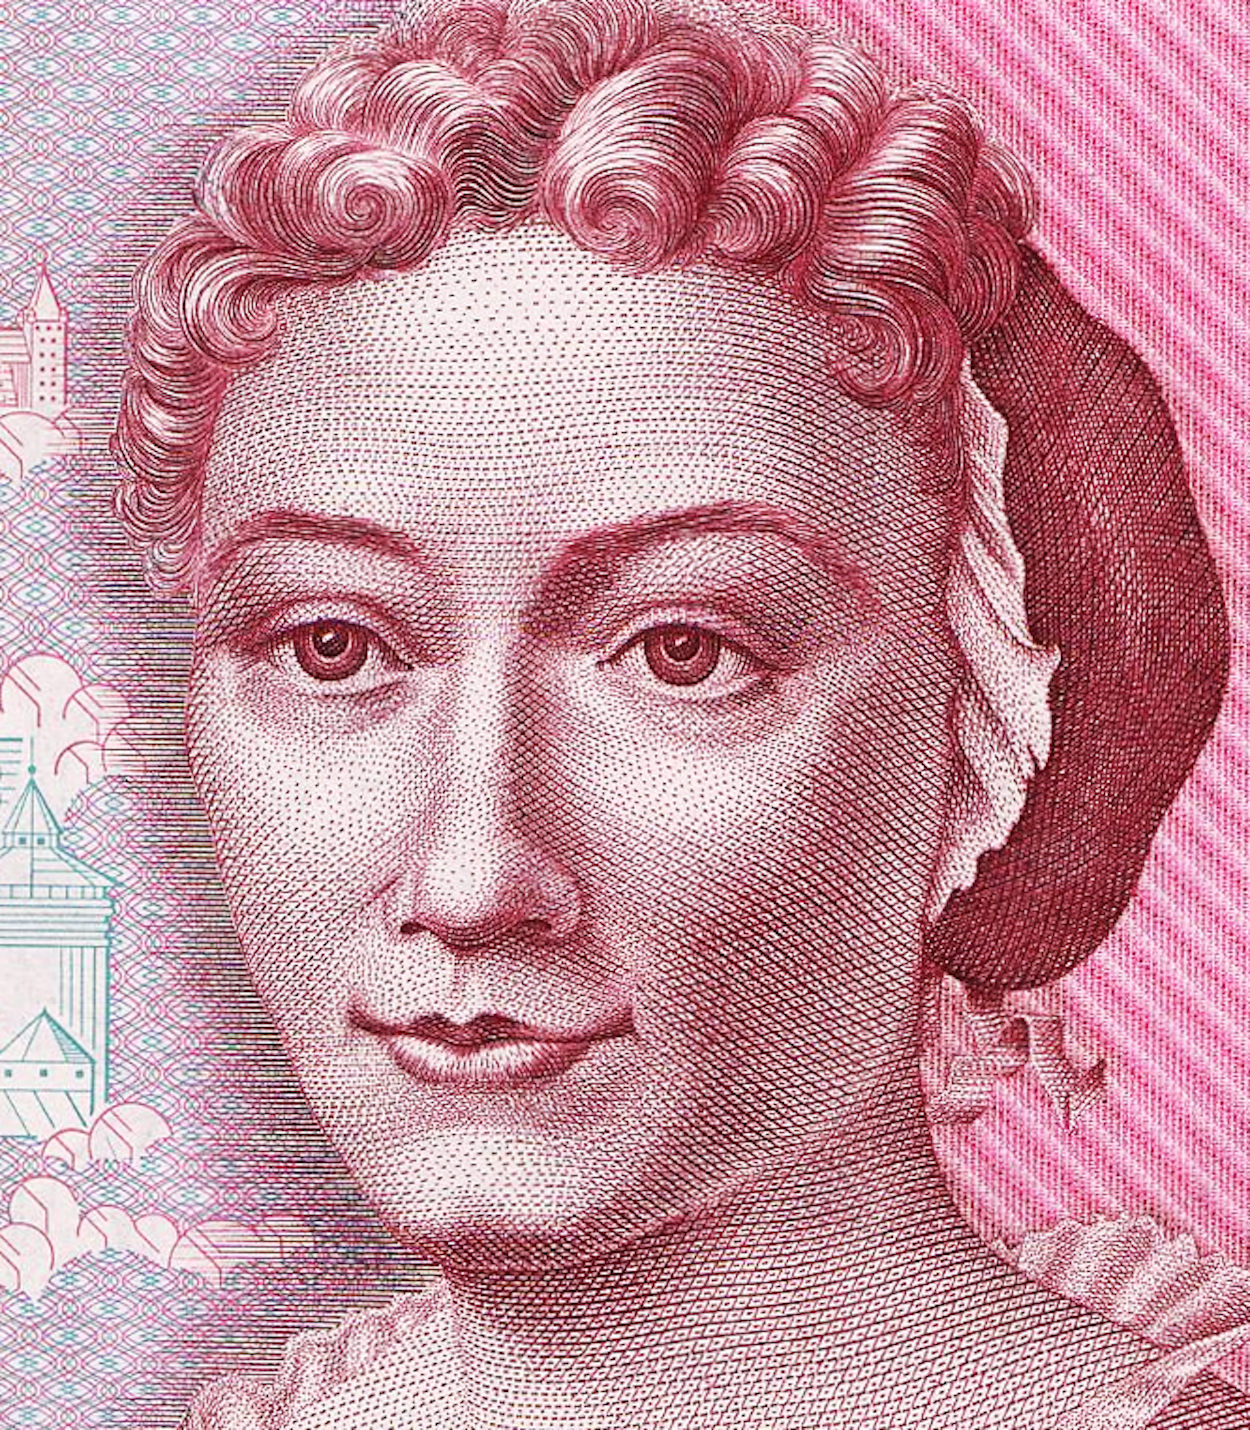 Maria Sibylla Merian - 2 aprile 1647 - 13 gennaio 1717